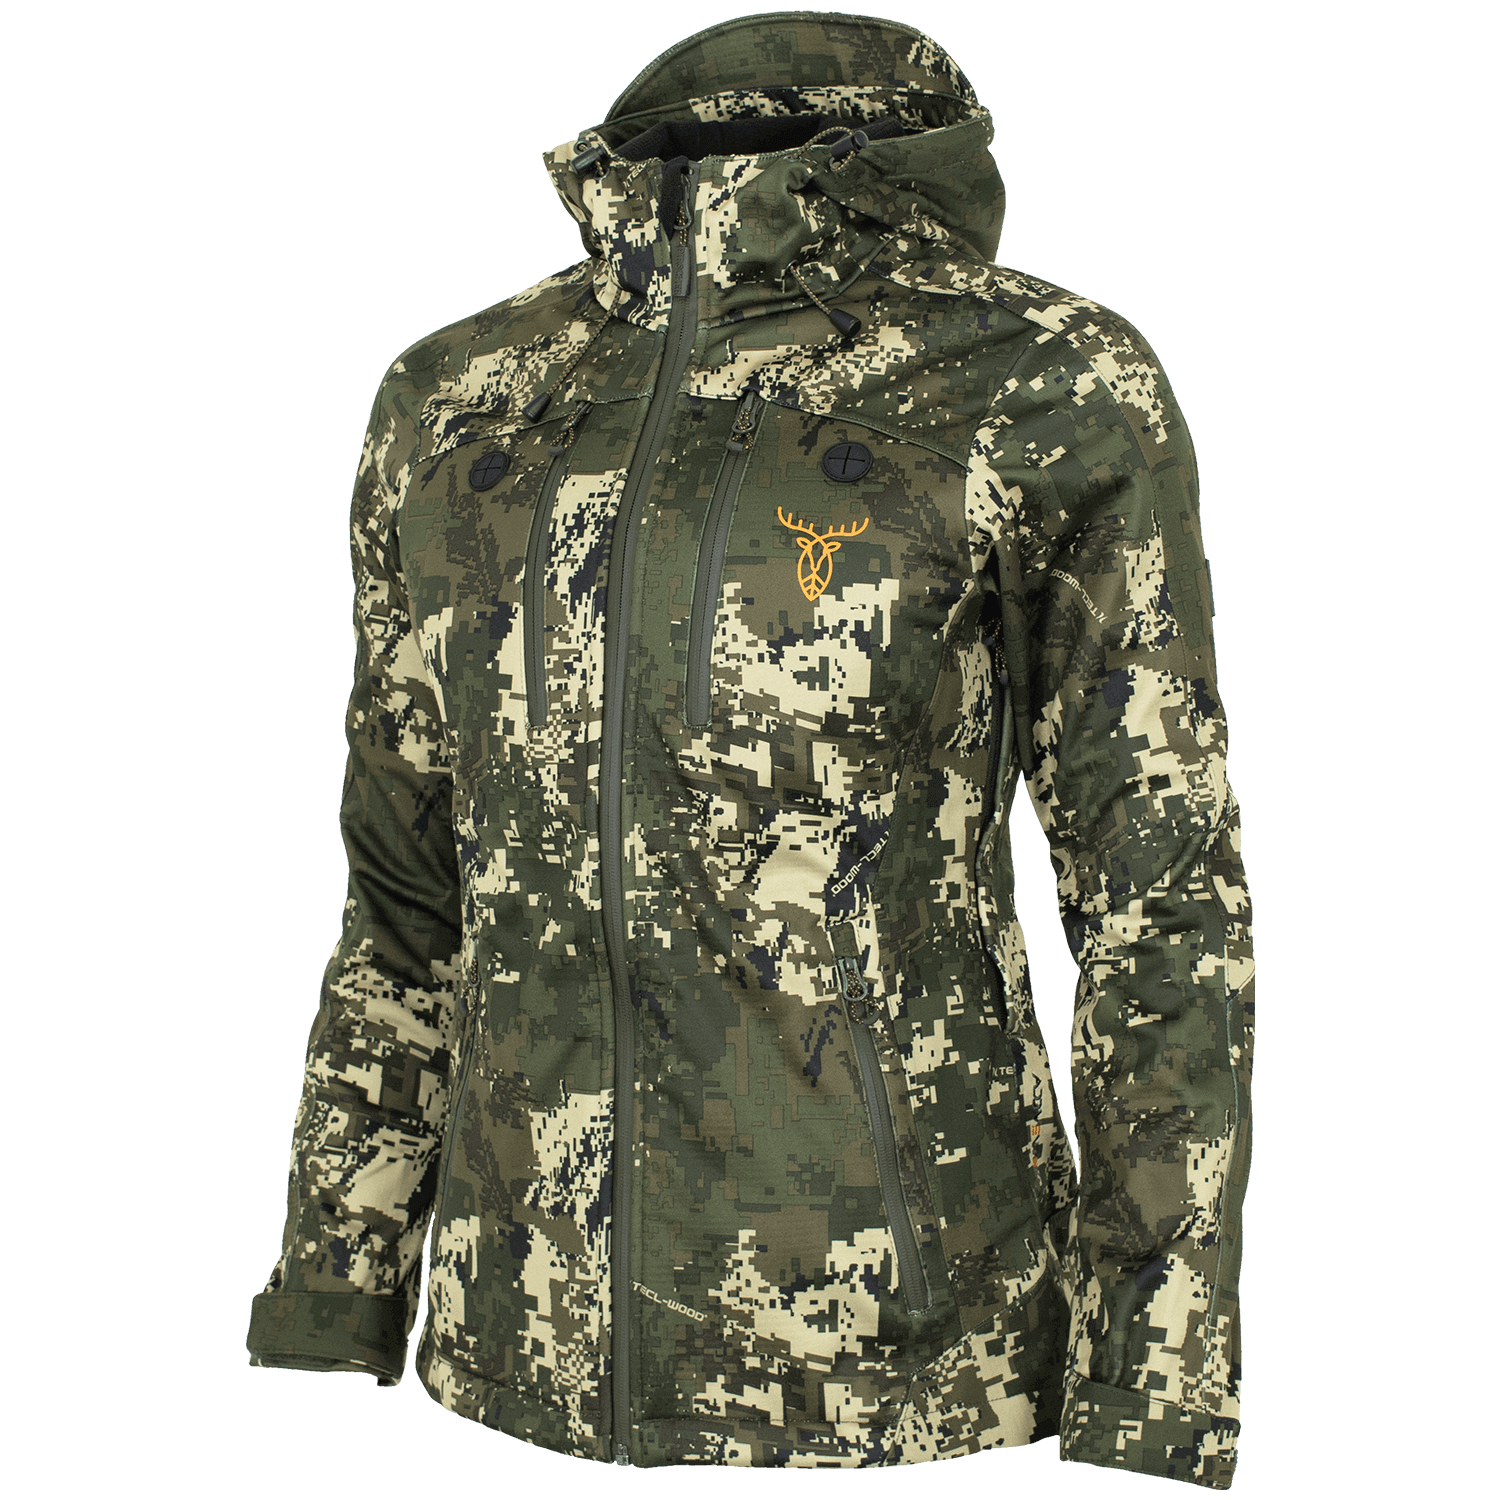 Pirscher Gear Allseason Ladies Jacket (Optimax) - Camouflage Clothing